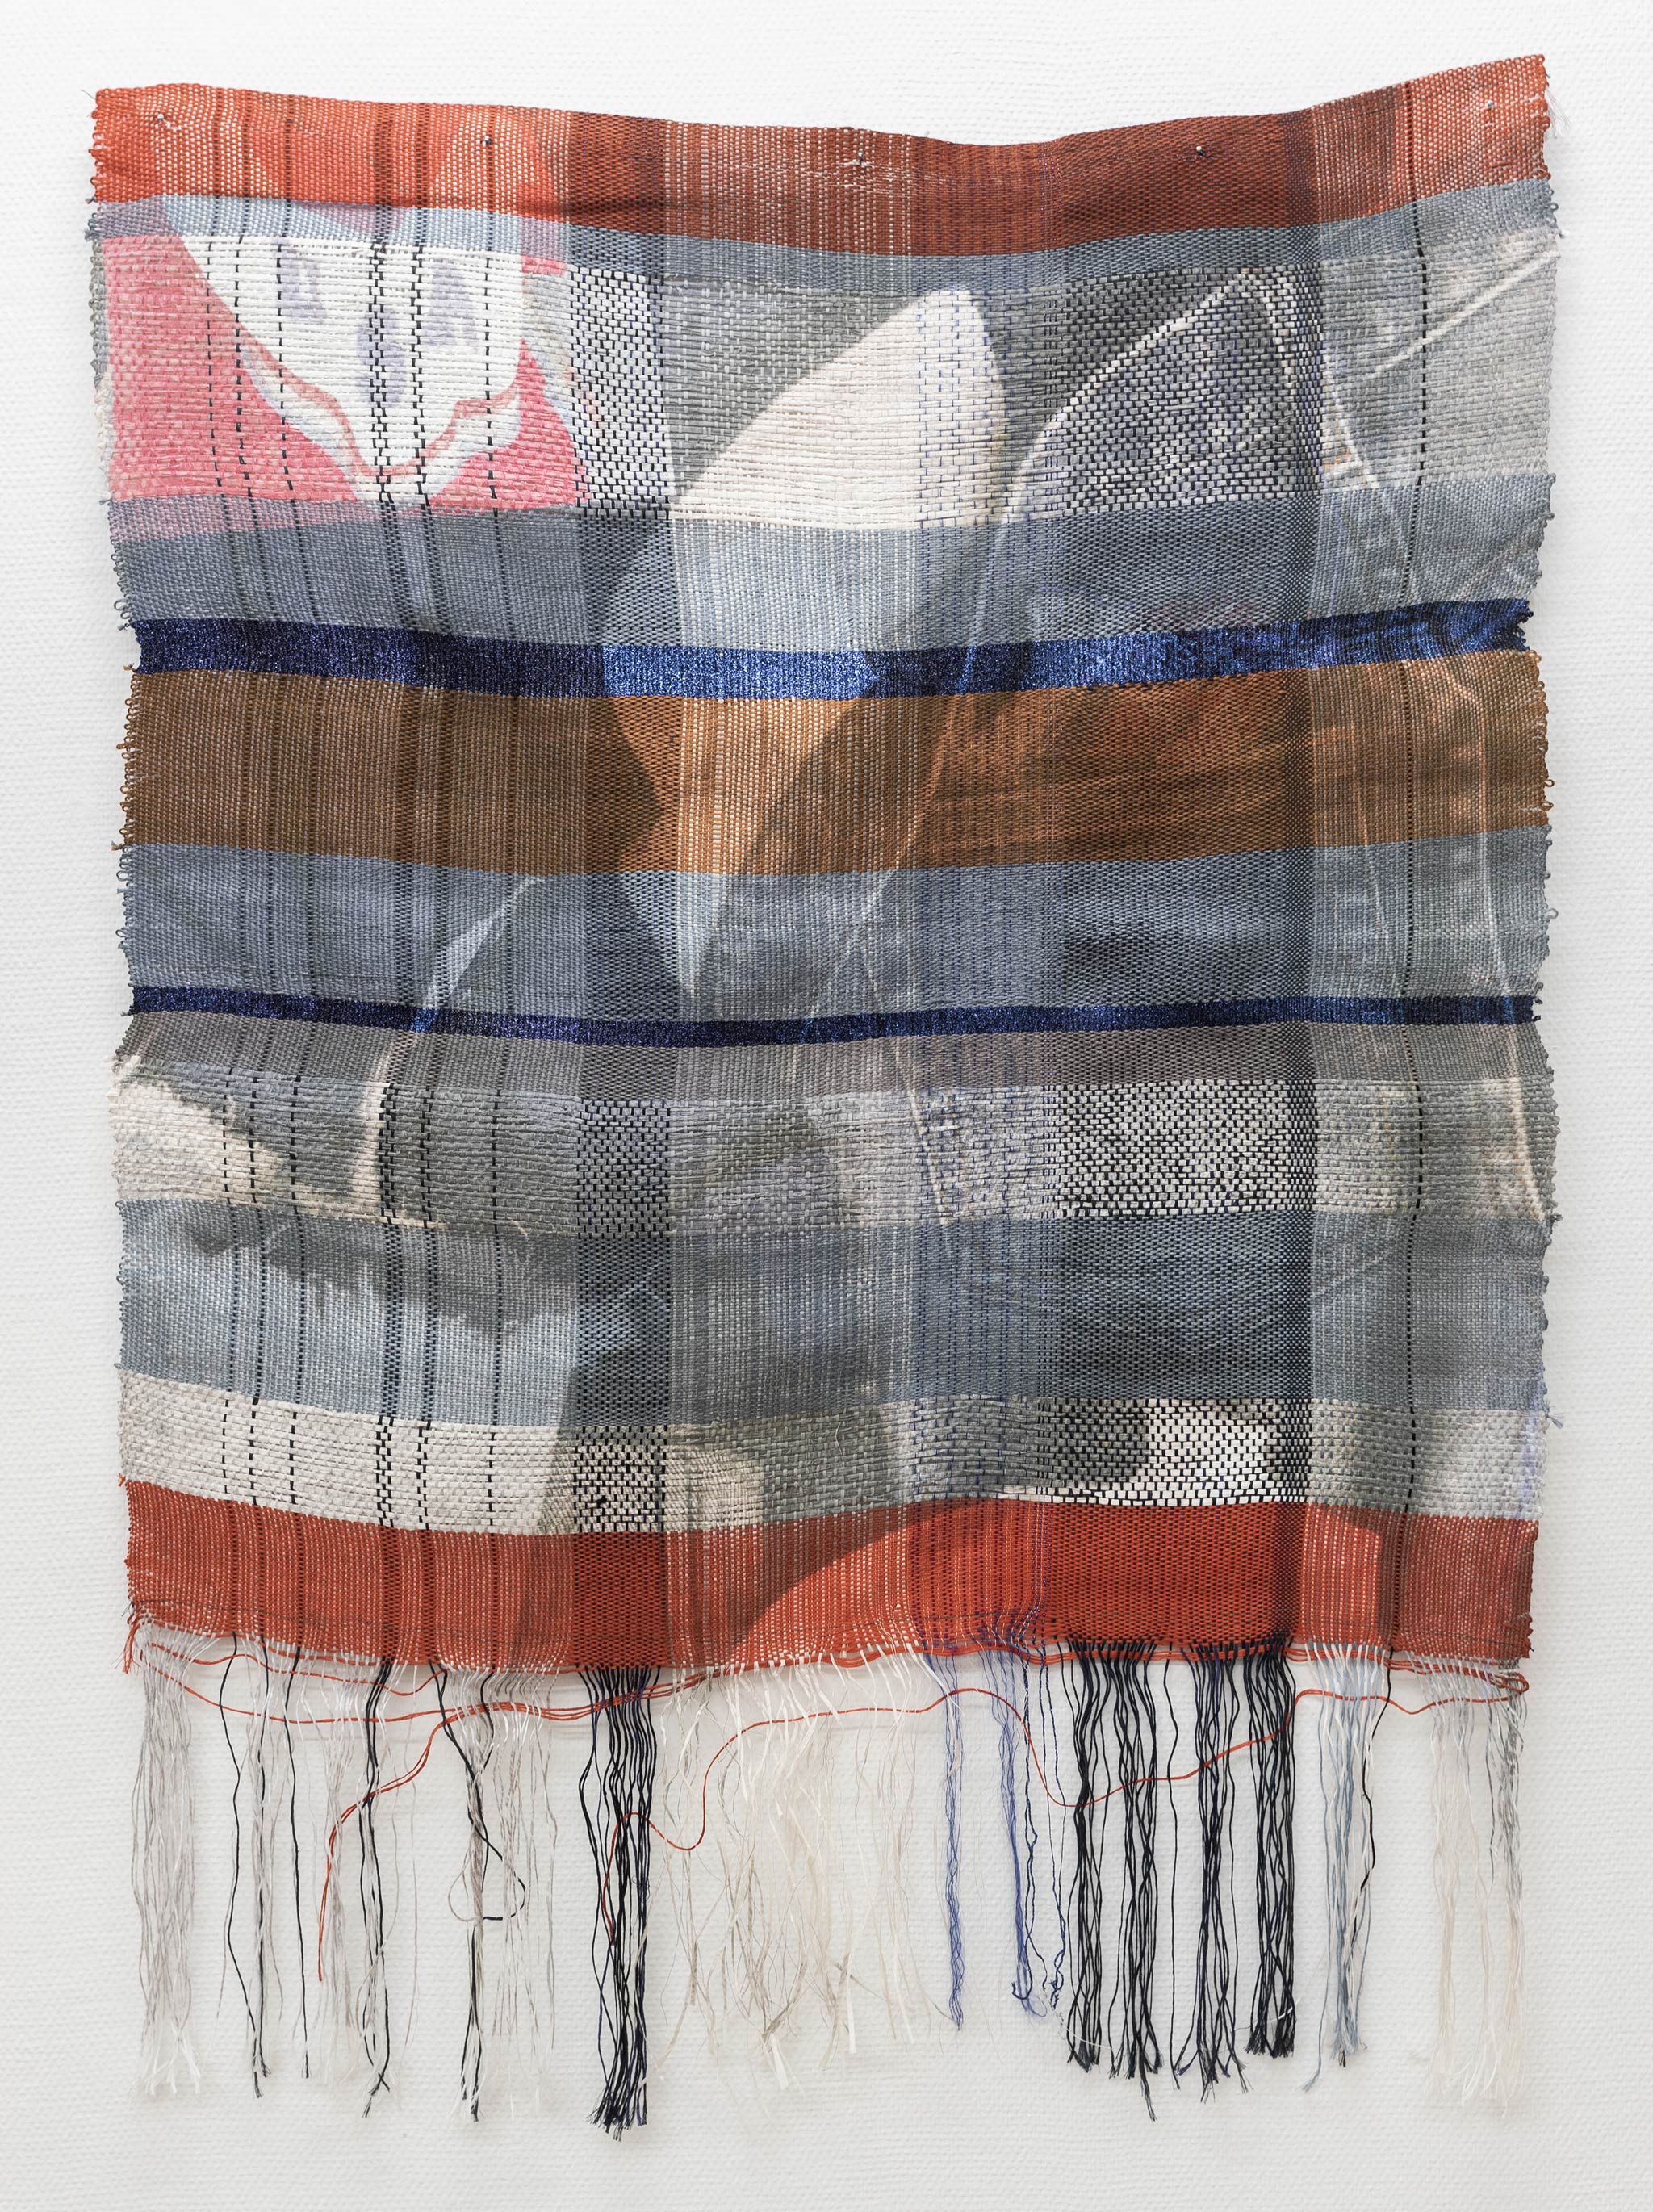 4. Marie Hazard - Allaround, 2018, hand-woven in paper, linen, lurex, mohair, digital print sublimation, 94 x 134 cm,